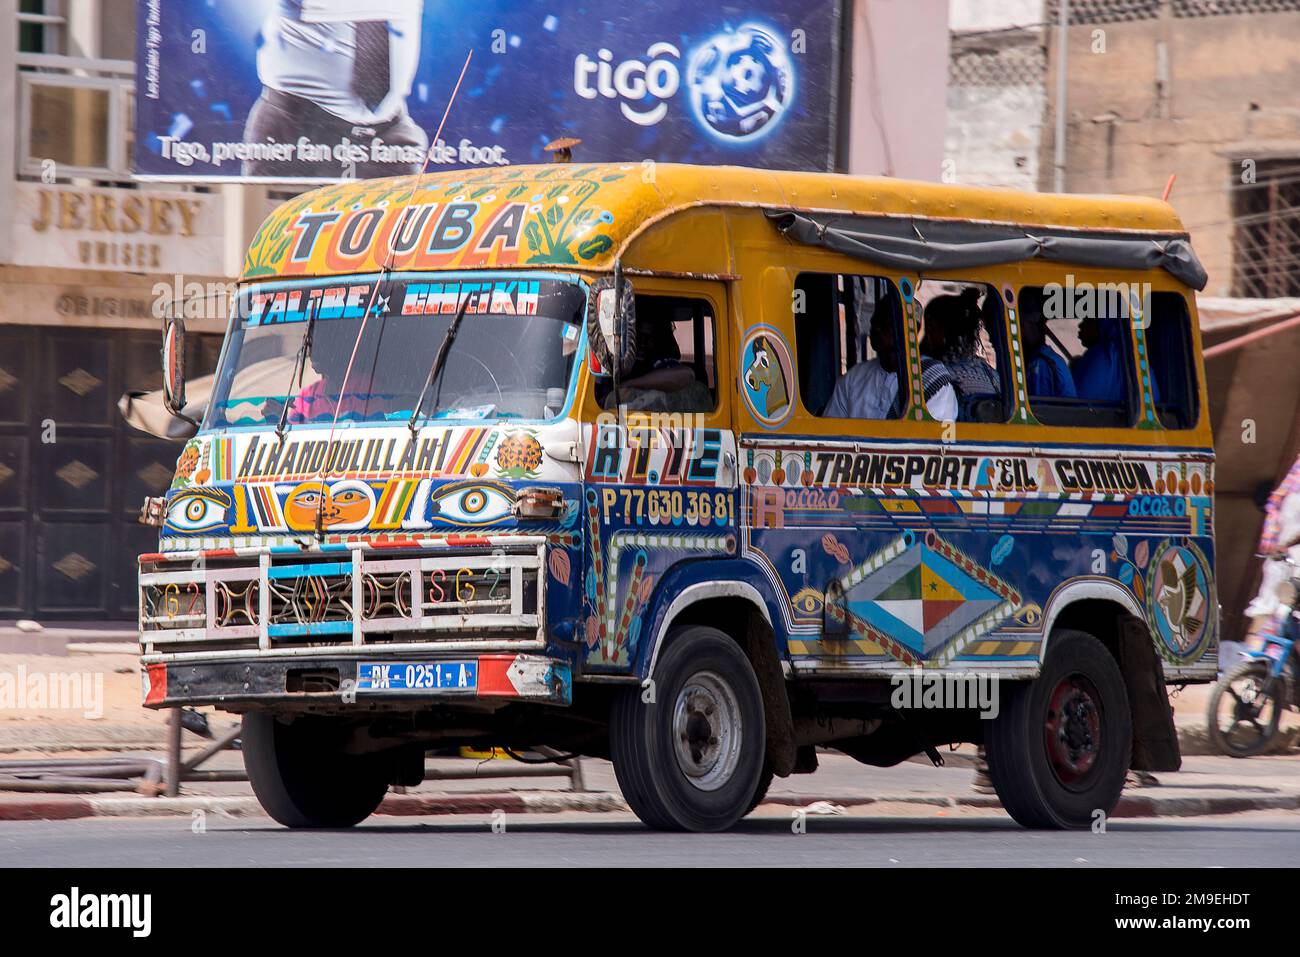 Bus multicolore typique circulant dans les rues de la ville de Dakar, Sénégal Banque D'Images